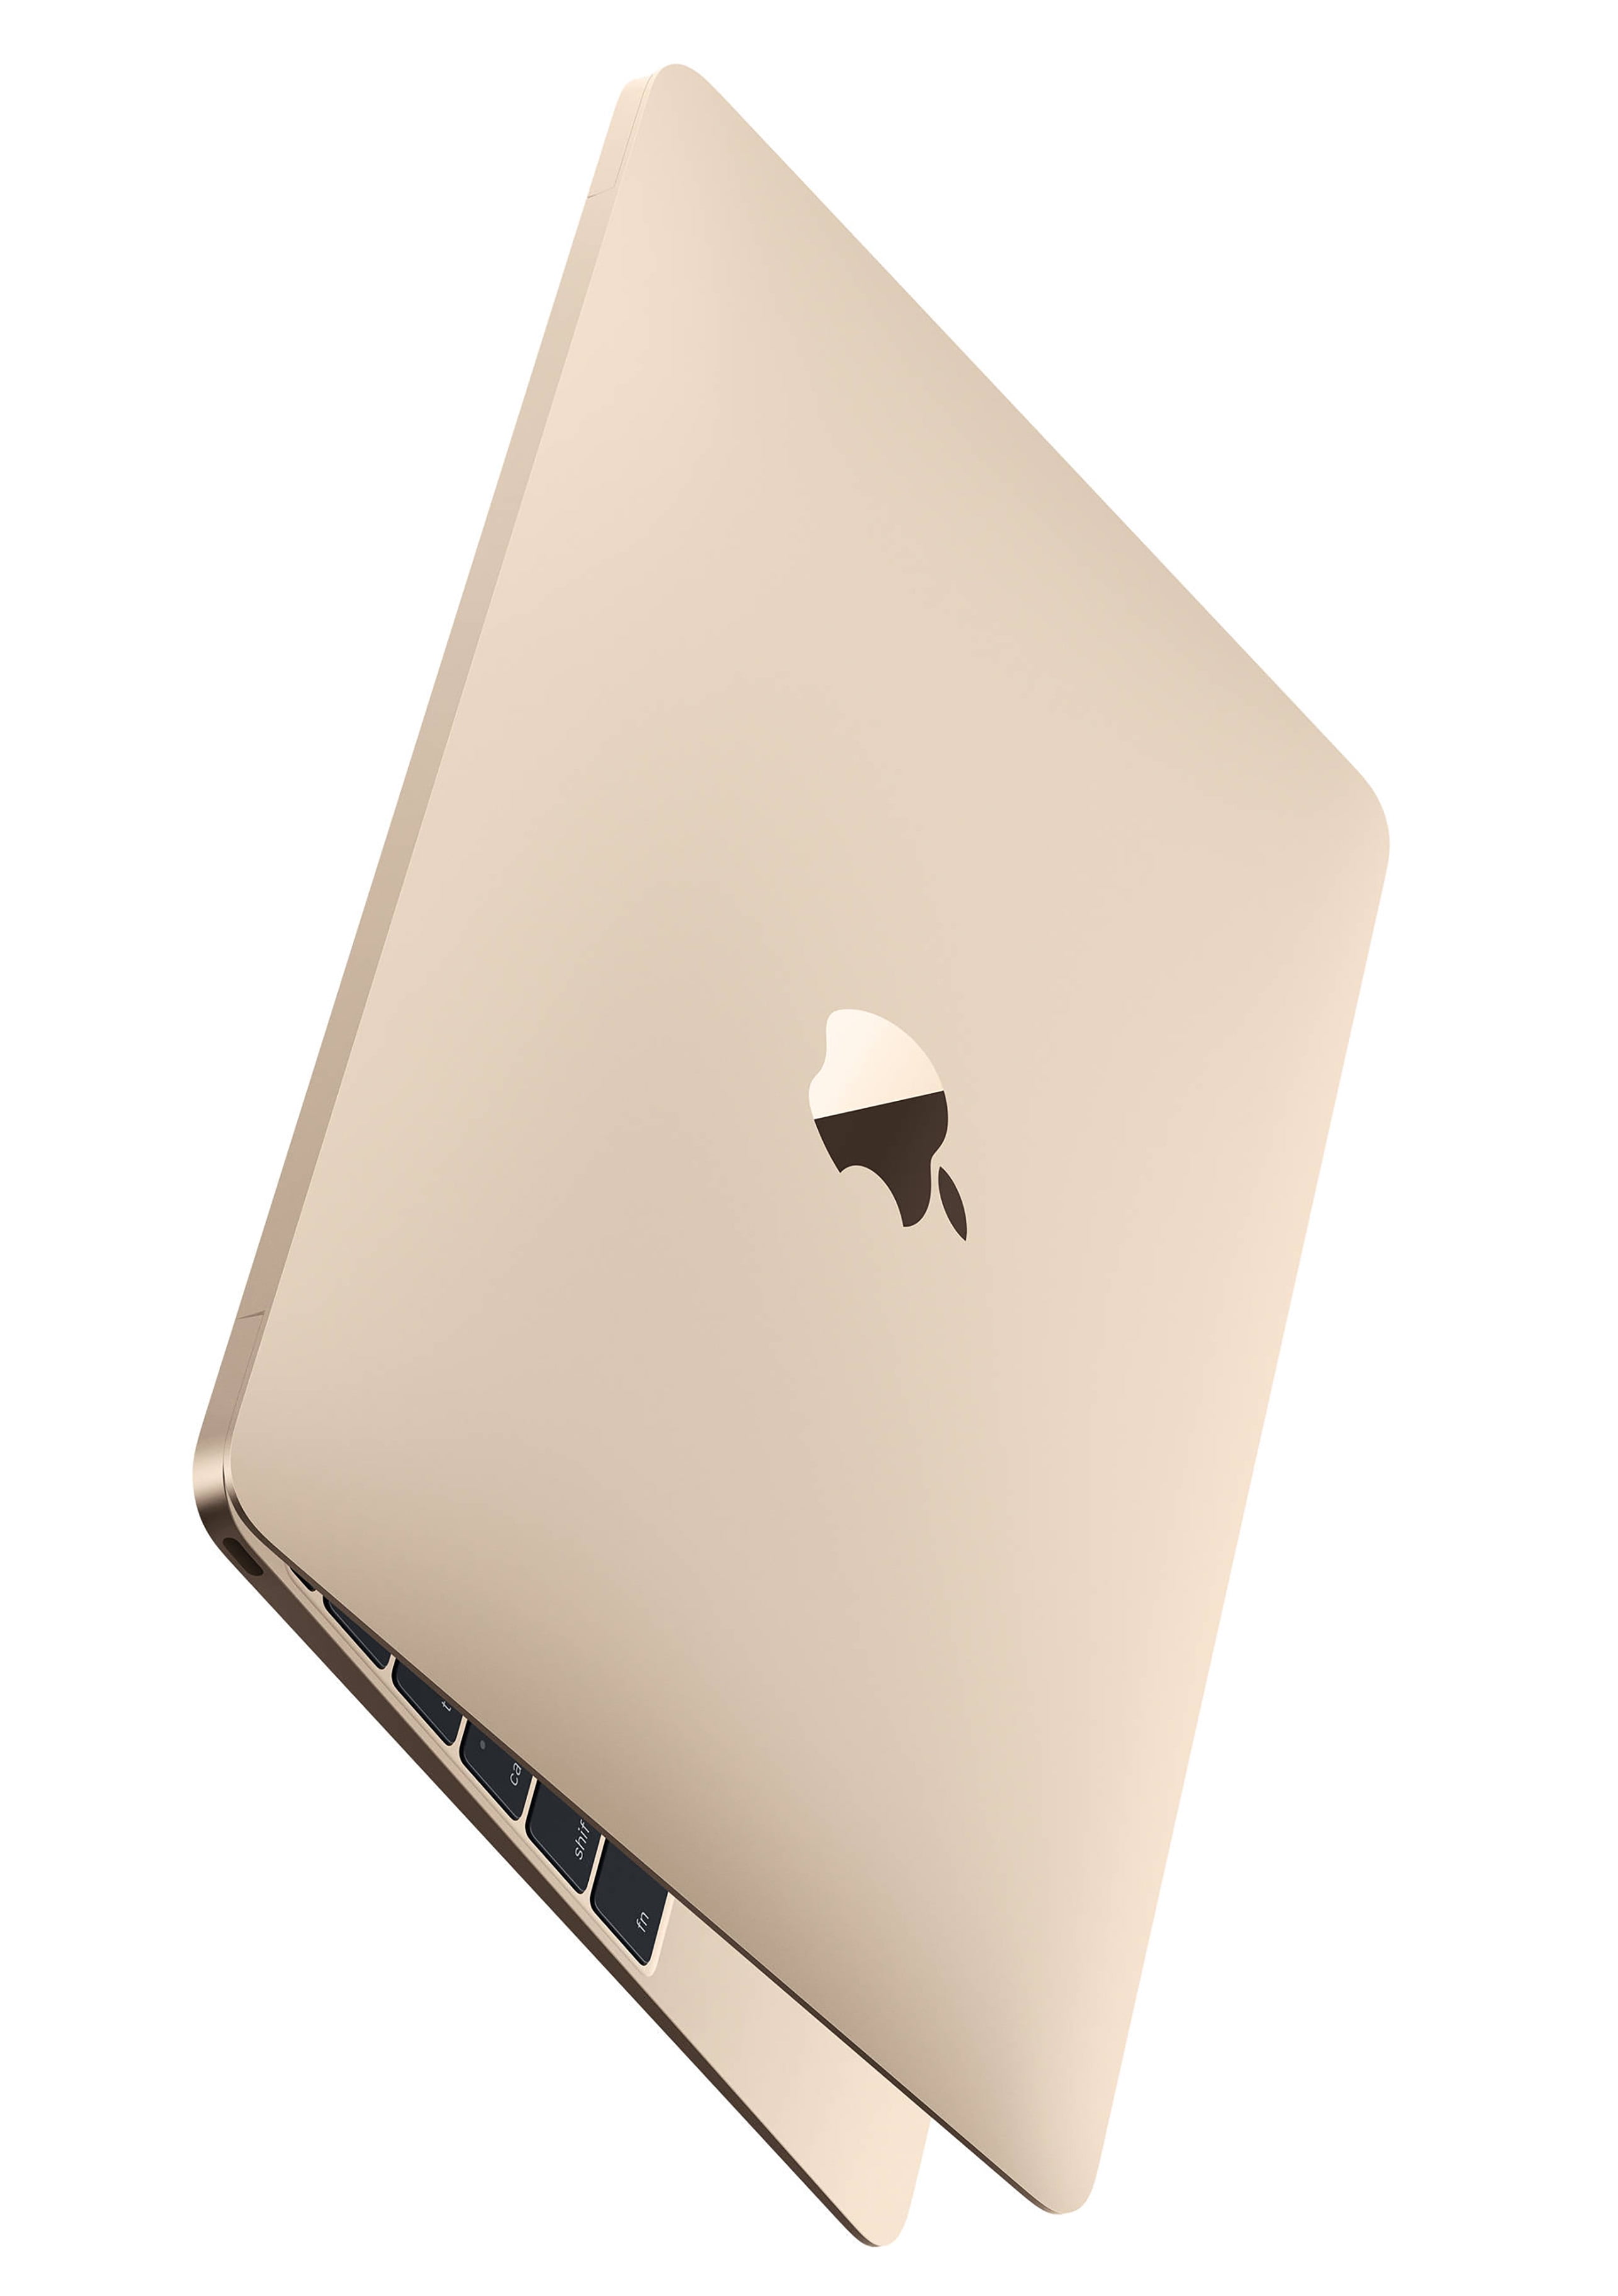 Restored Apple Macbook 12" Retina Display Intel Core m3, 8GB Memory